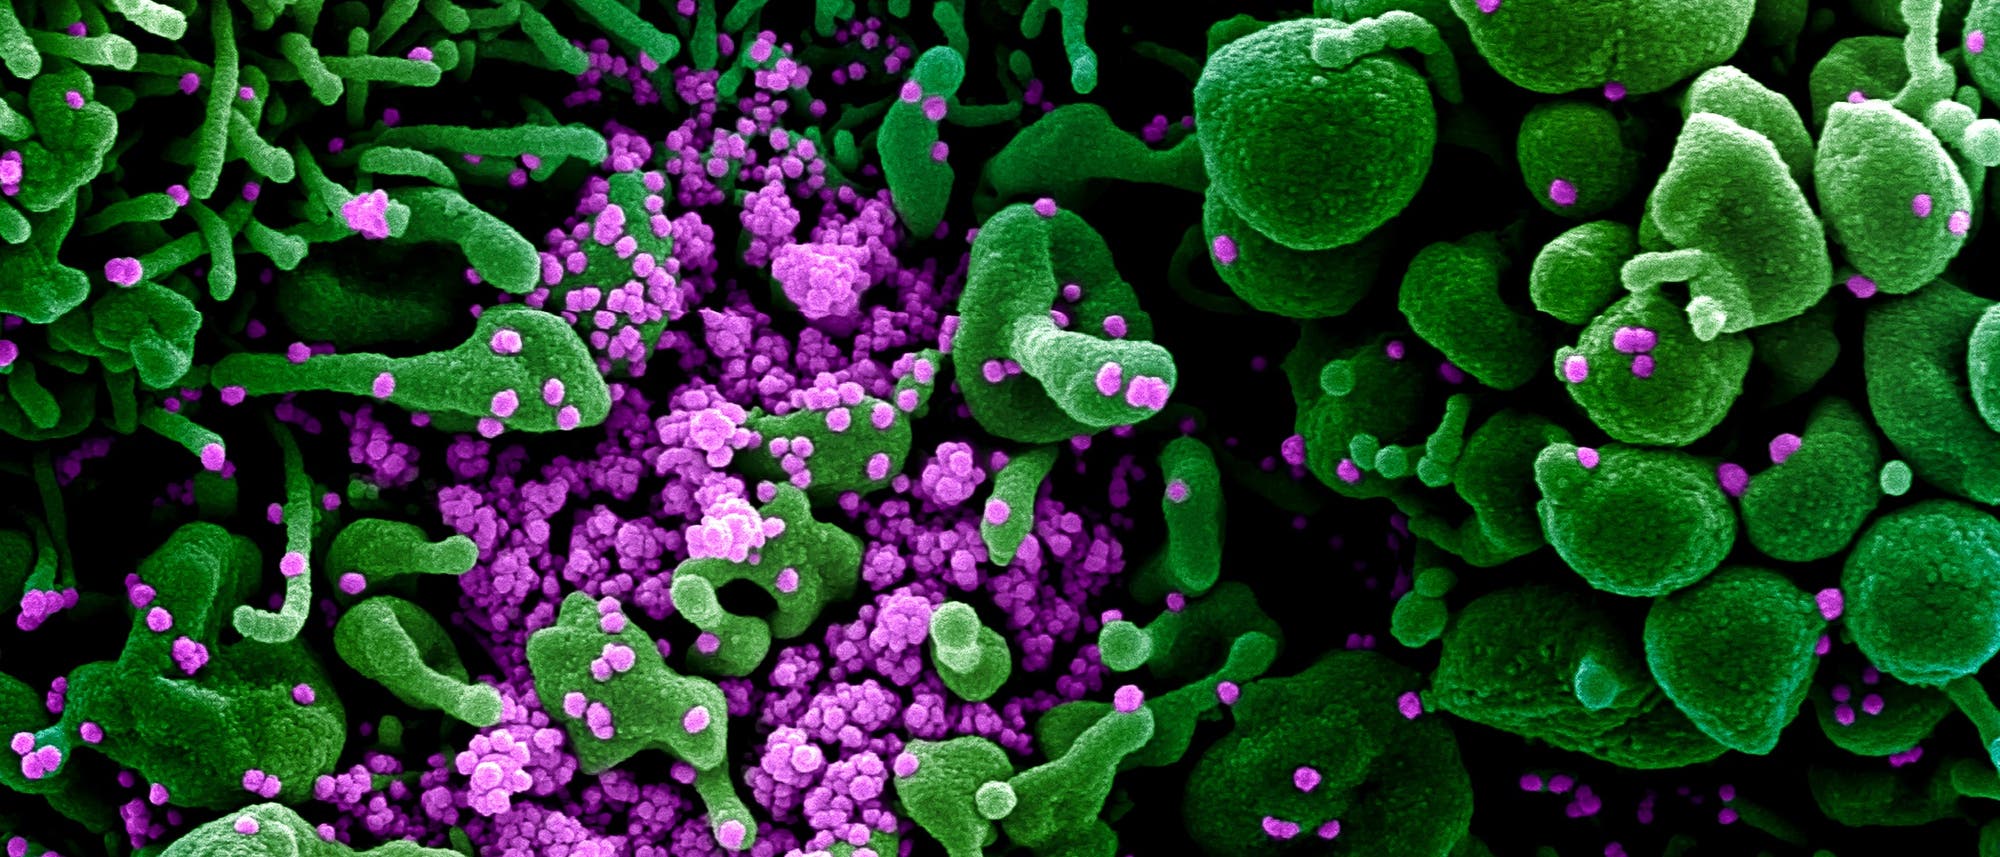 Eine rasterelektronenmikroskopische Aufnahme zeigt eine mit Sars-Cov-2-Partikeln (lila) infizierte Zelle (grün).